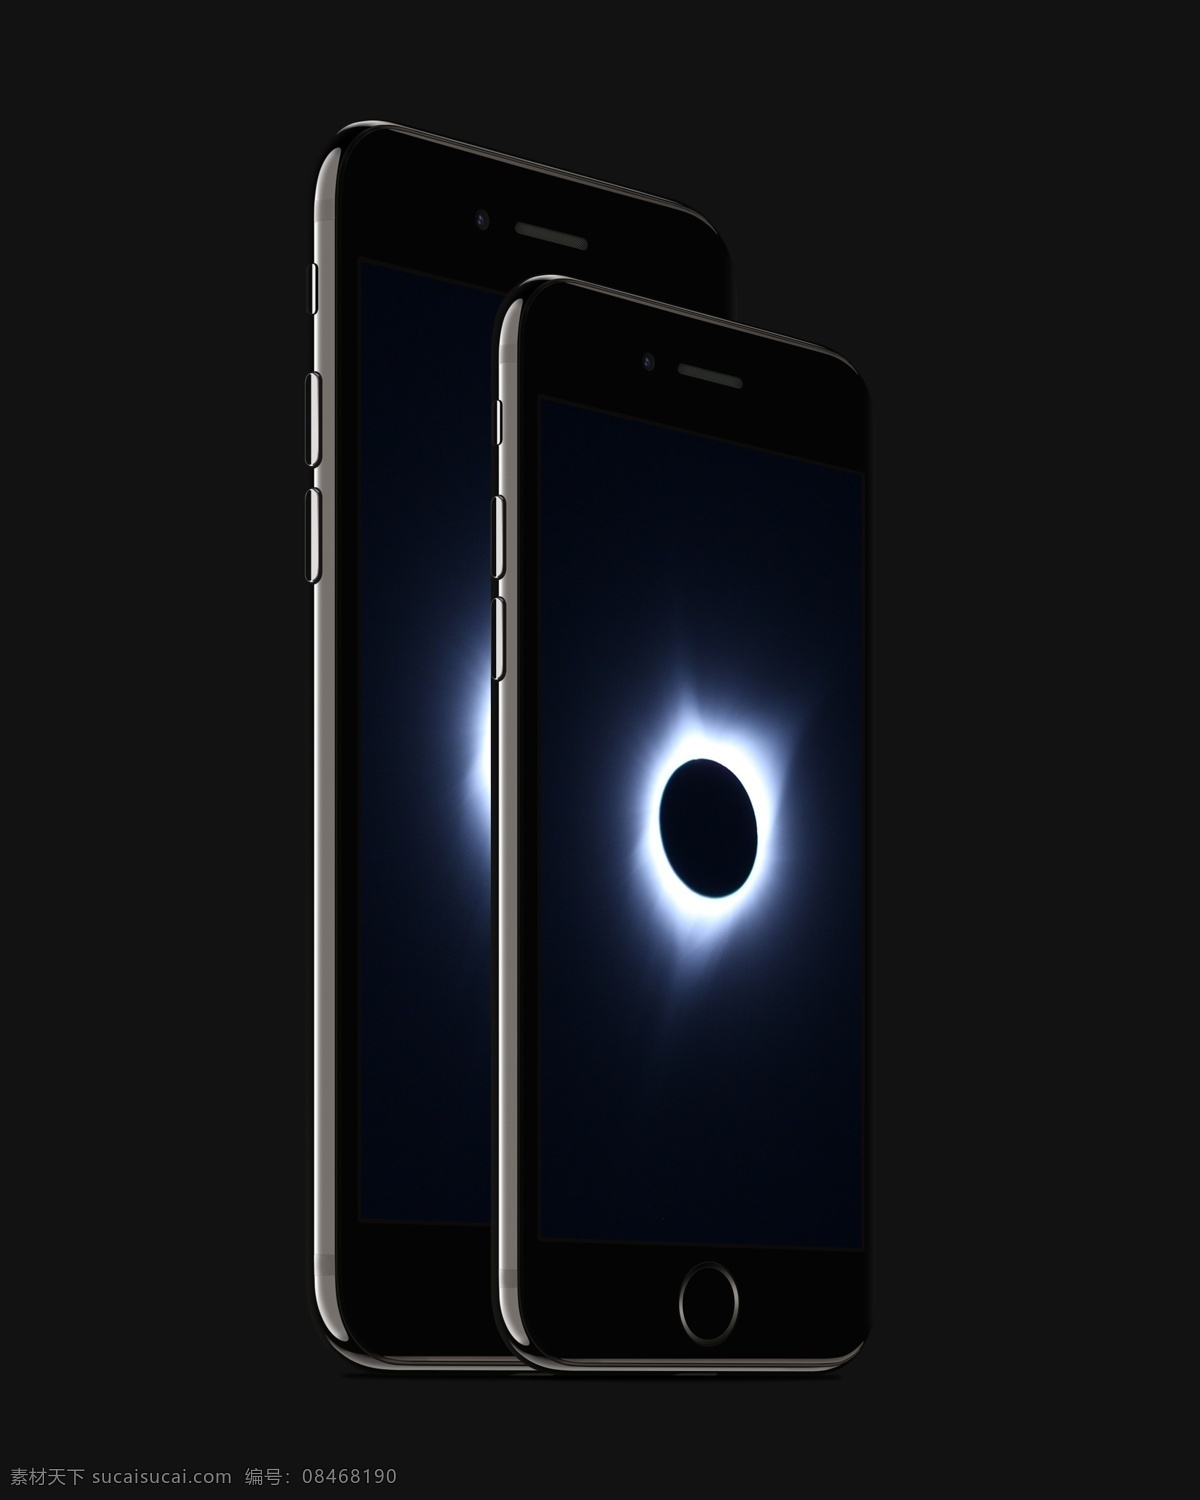 全 黑色 系 苹果 iphone7 贴图 样机 ui设计 电子产品 角度 模型 平面设计 实体产品 颜色